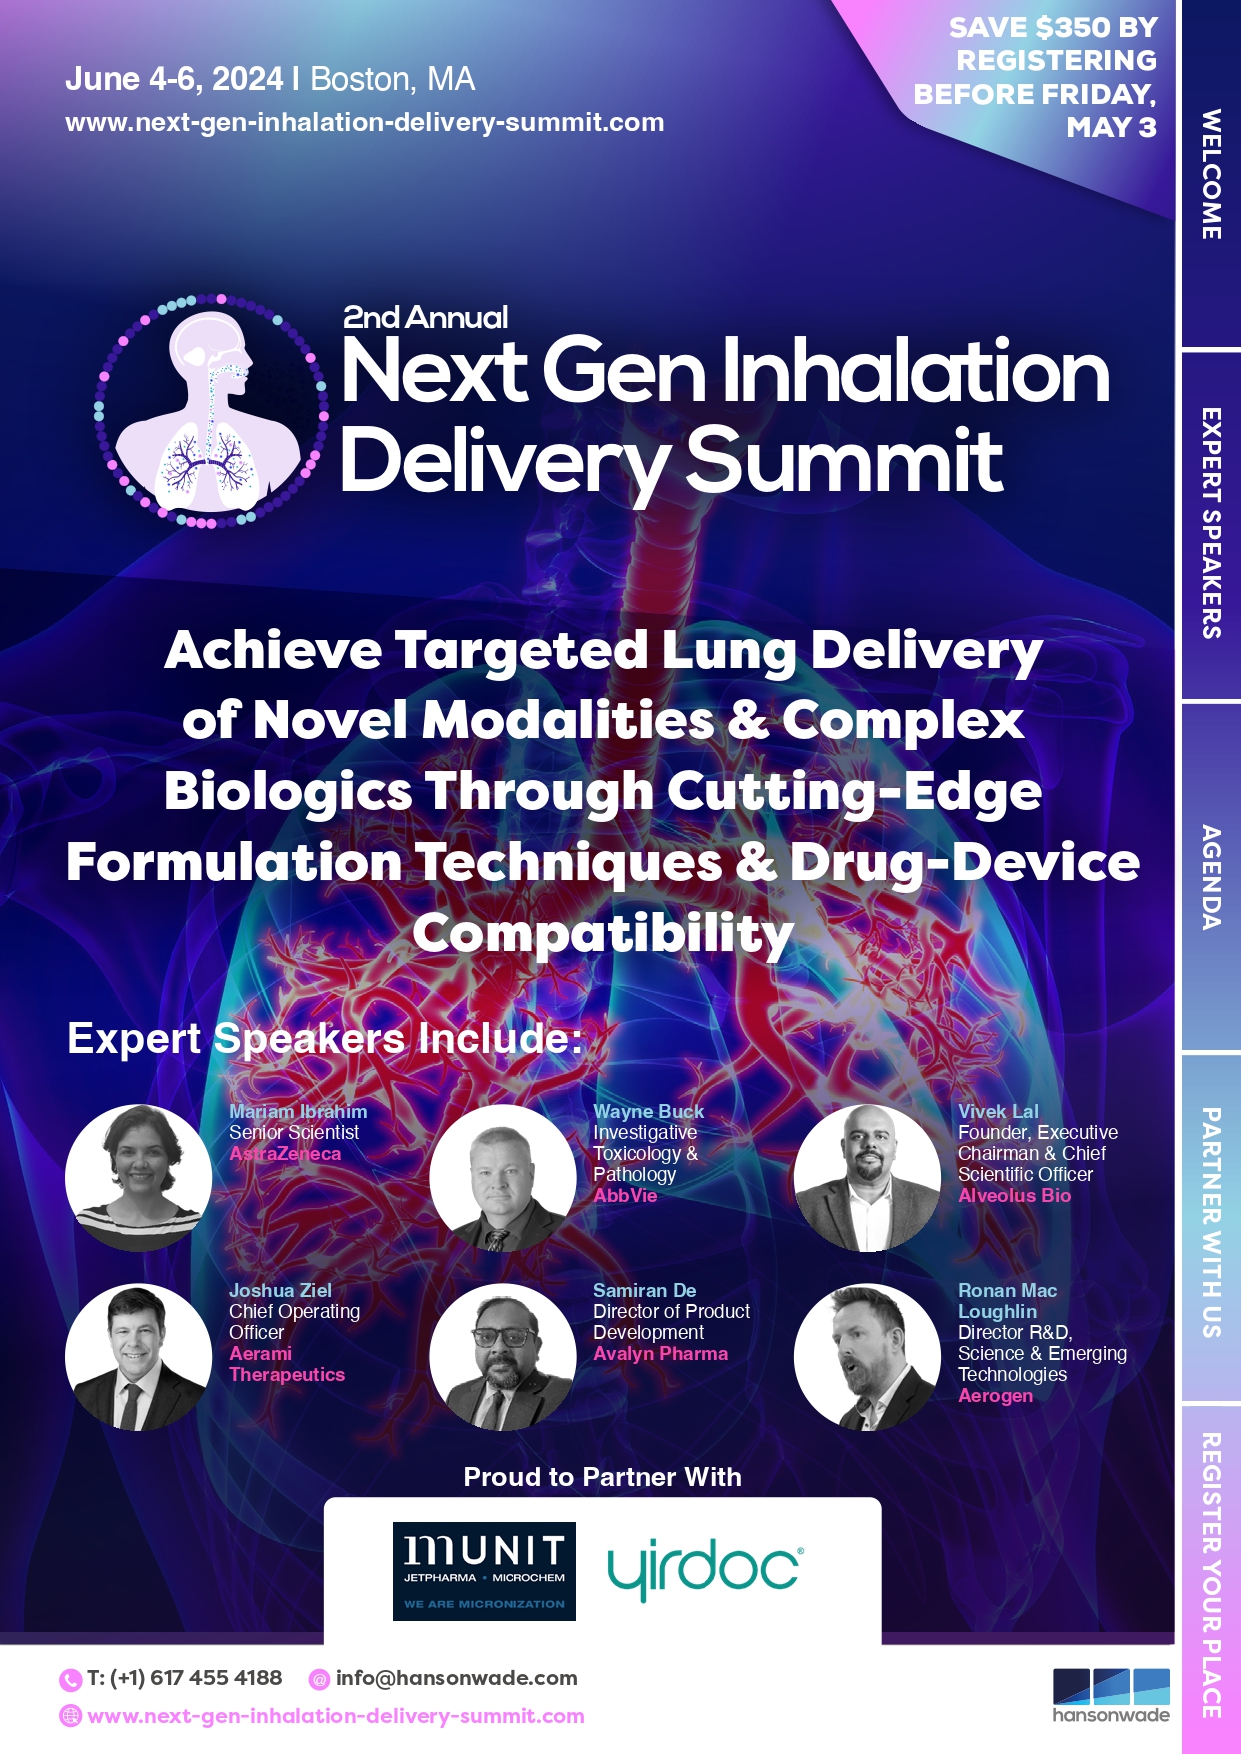 Next Gen Inhalation Delivery Summit brochure (2)_page-0001